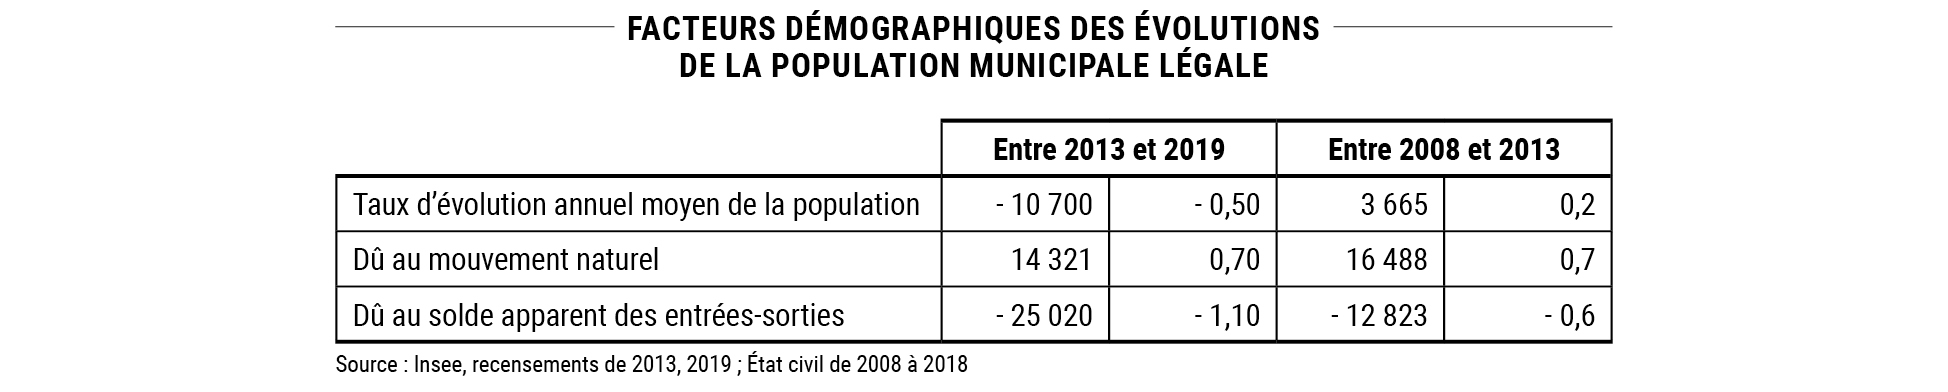 Facteurs démographiques des évolutions de la population municipale légale © Apur - Source : Insee, recensements de 2013, 2019 ; État civil de 2008 à 2018